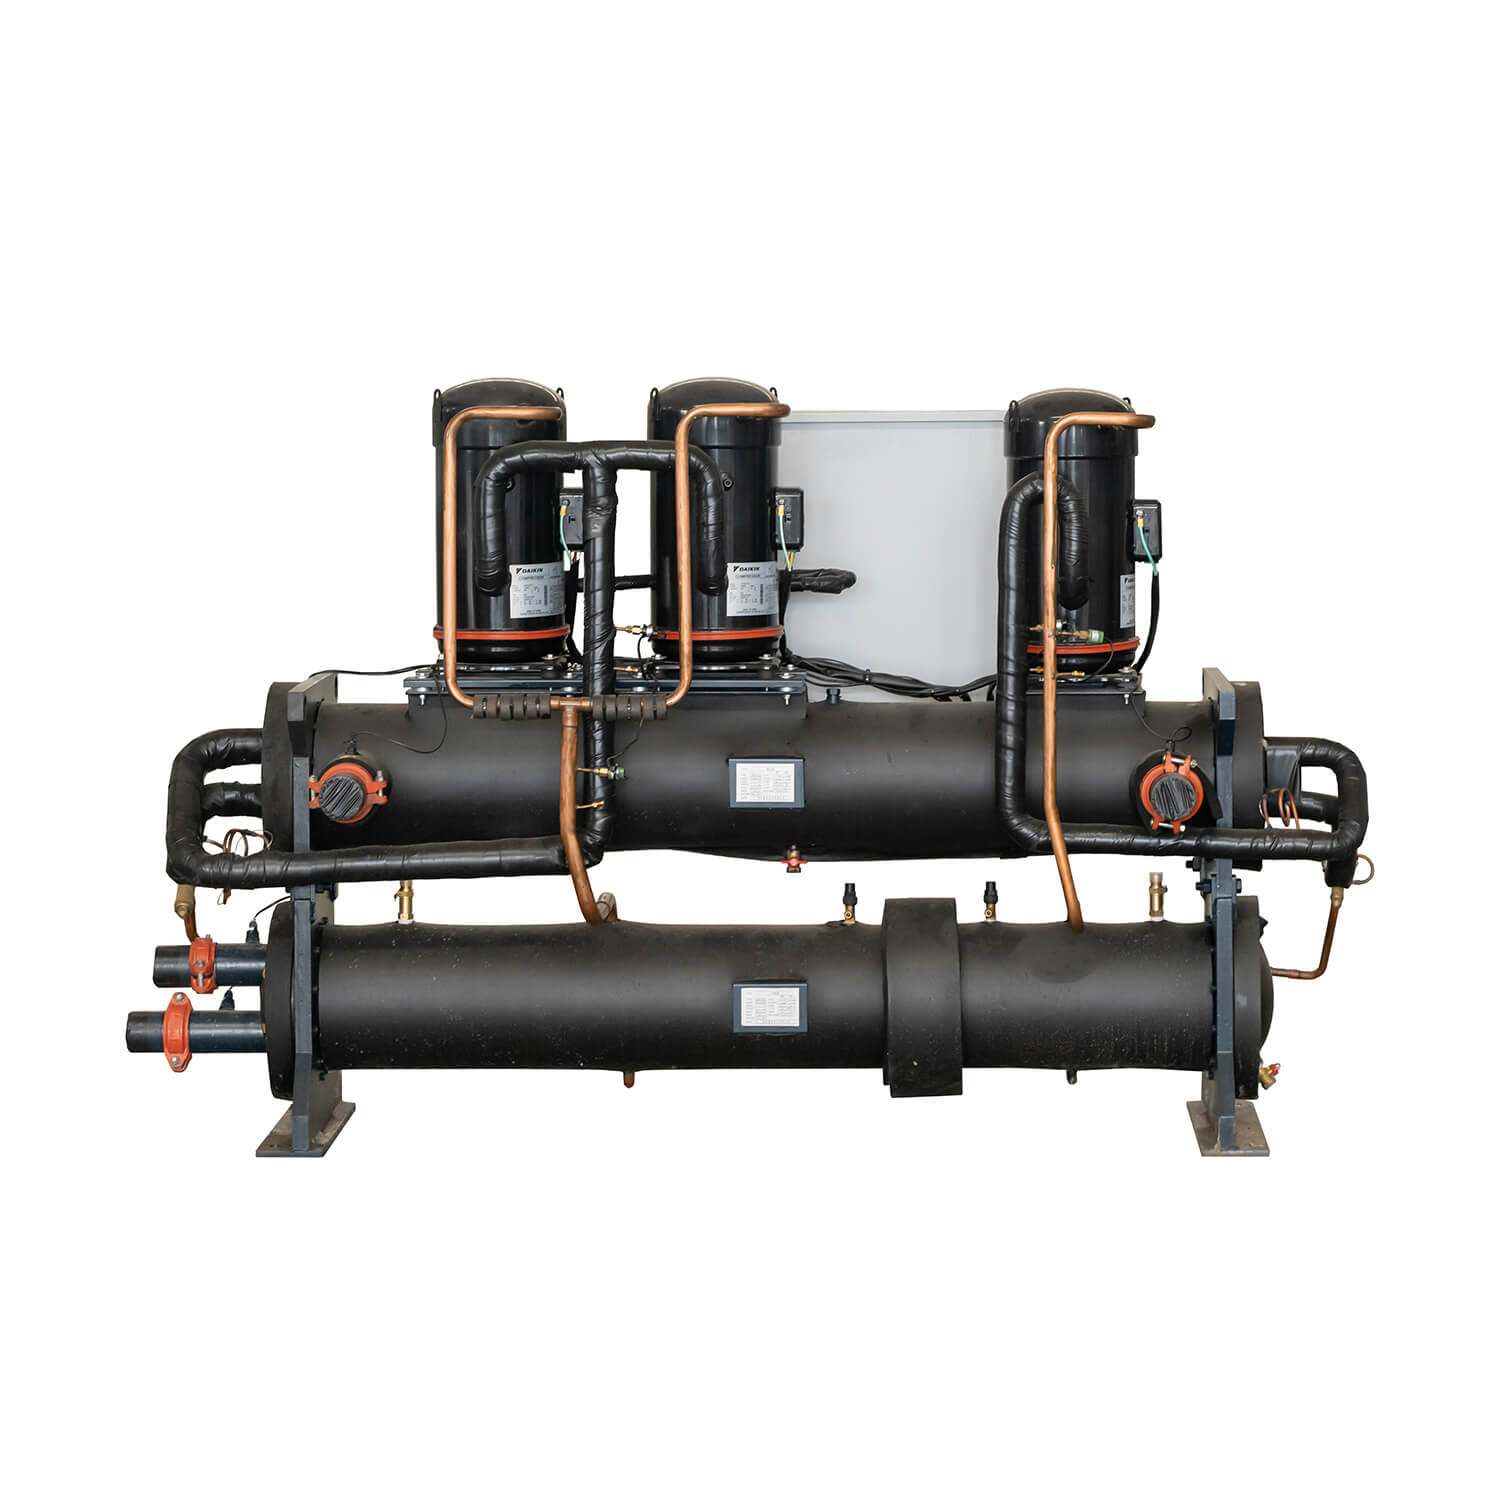 Enfriador Scroll refrigerado por agua de 70kw-280kw y bomba de calor, aire acondicionado central industrial/comercial